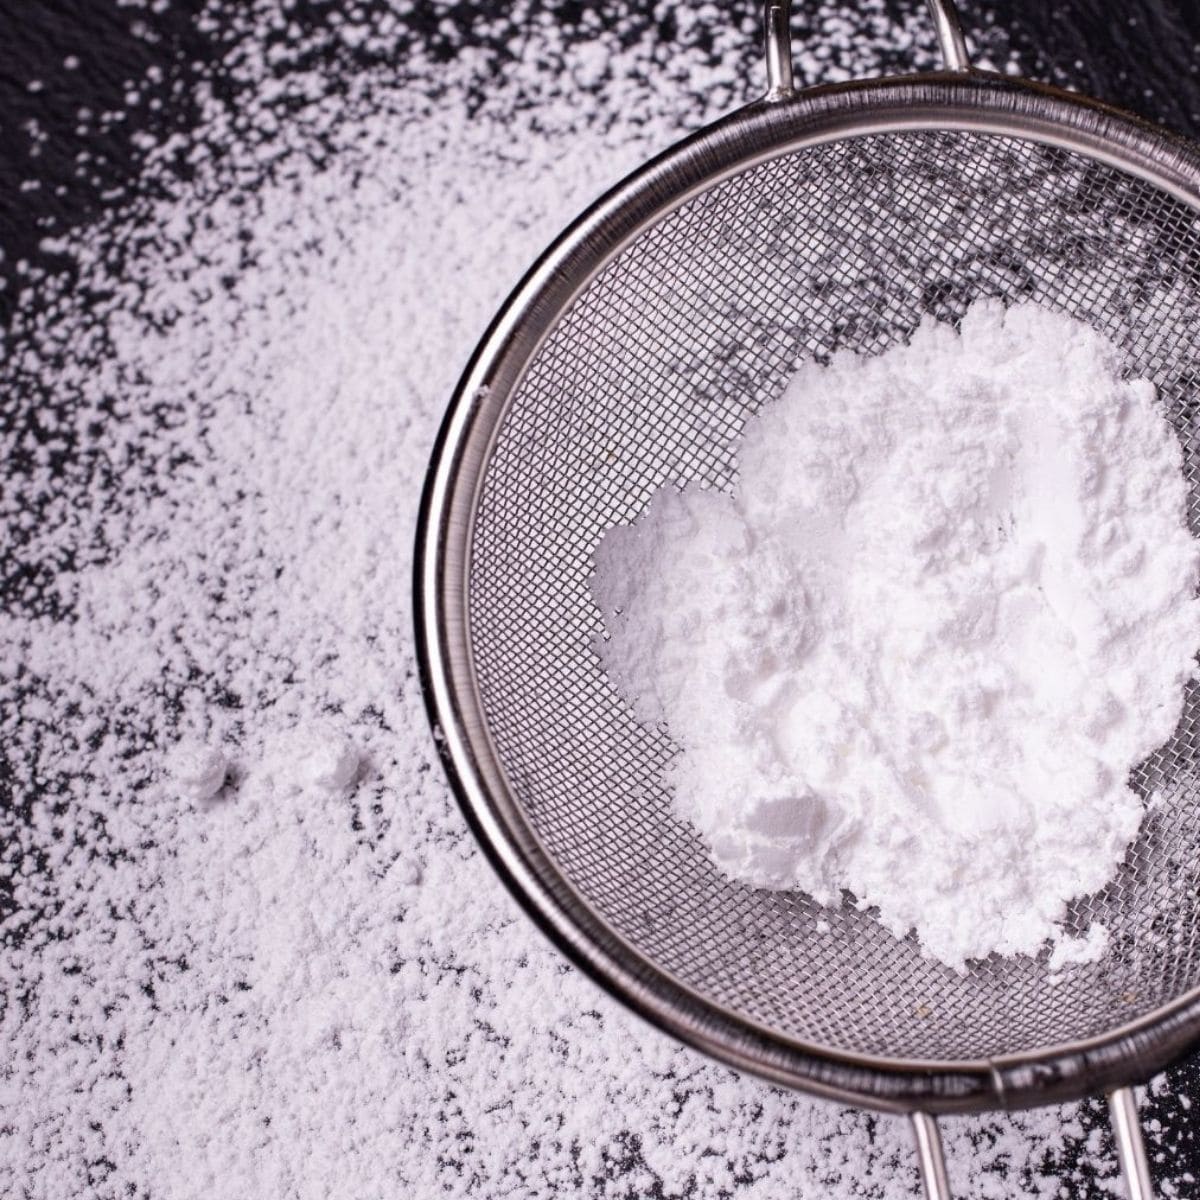 Pilihan pengganti gula tepung terbaik untuk digunakan dalam penaik.